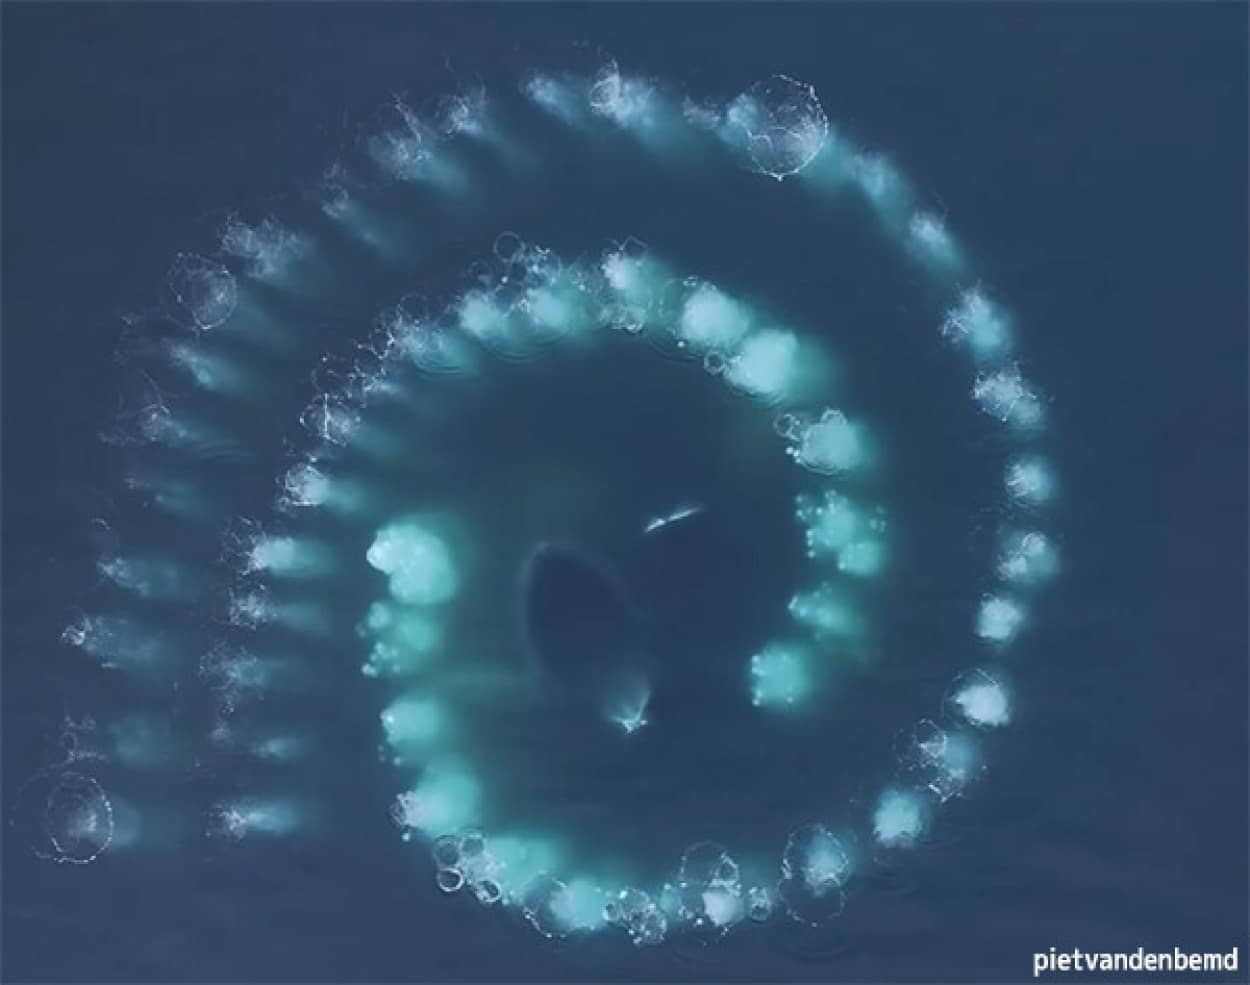 南極の海で謎めいたフィボナッチ数列が出現